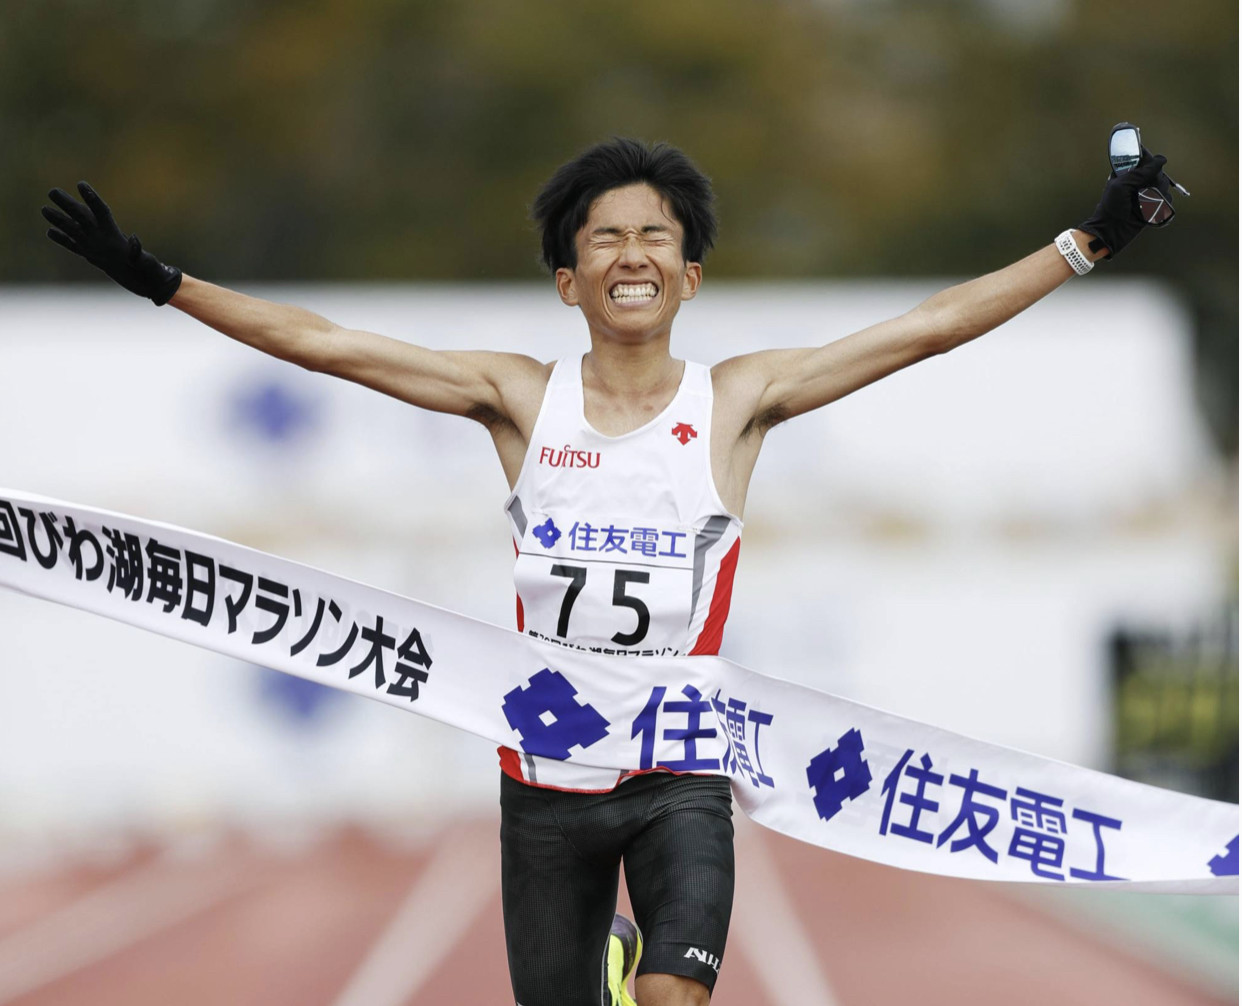 Running News Tagged #Suguru Osako - Running News Daily by My BEST Runs